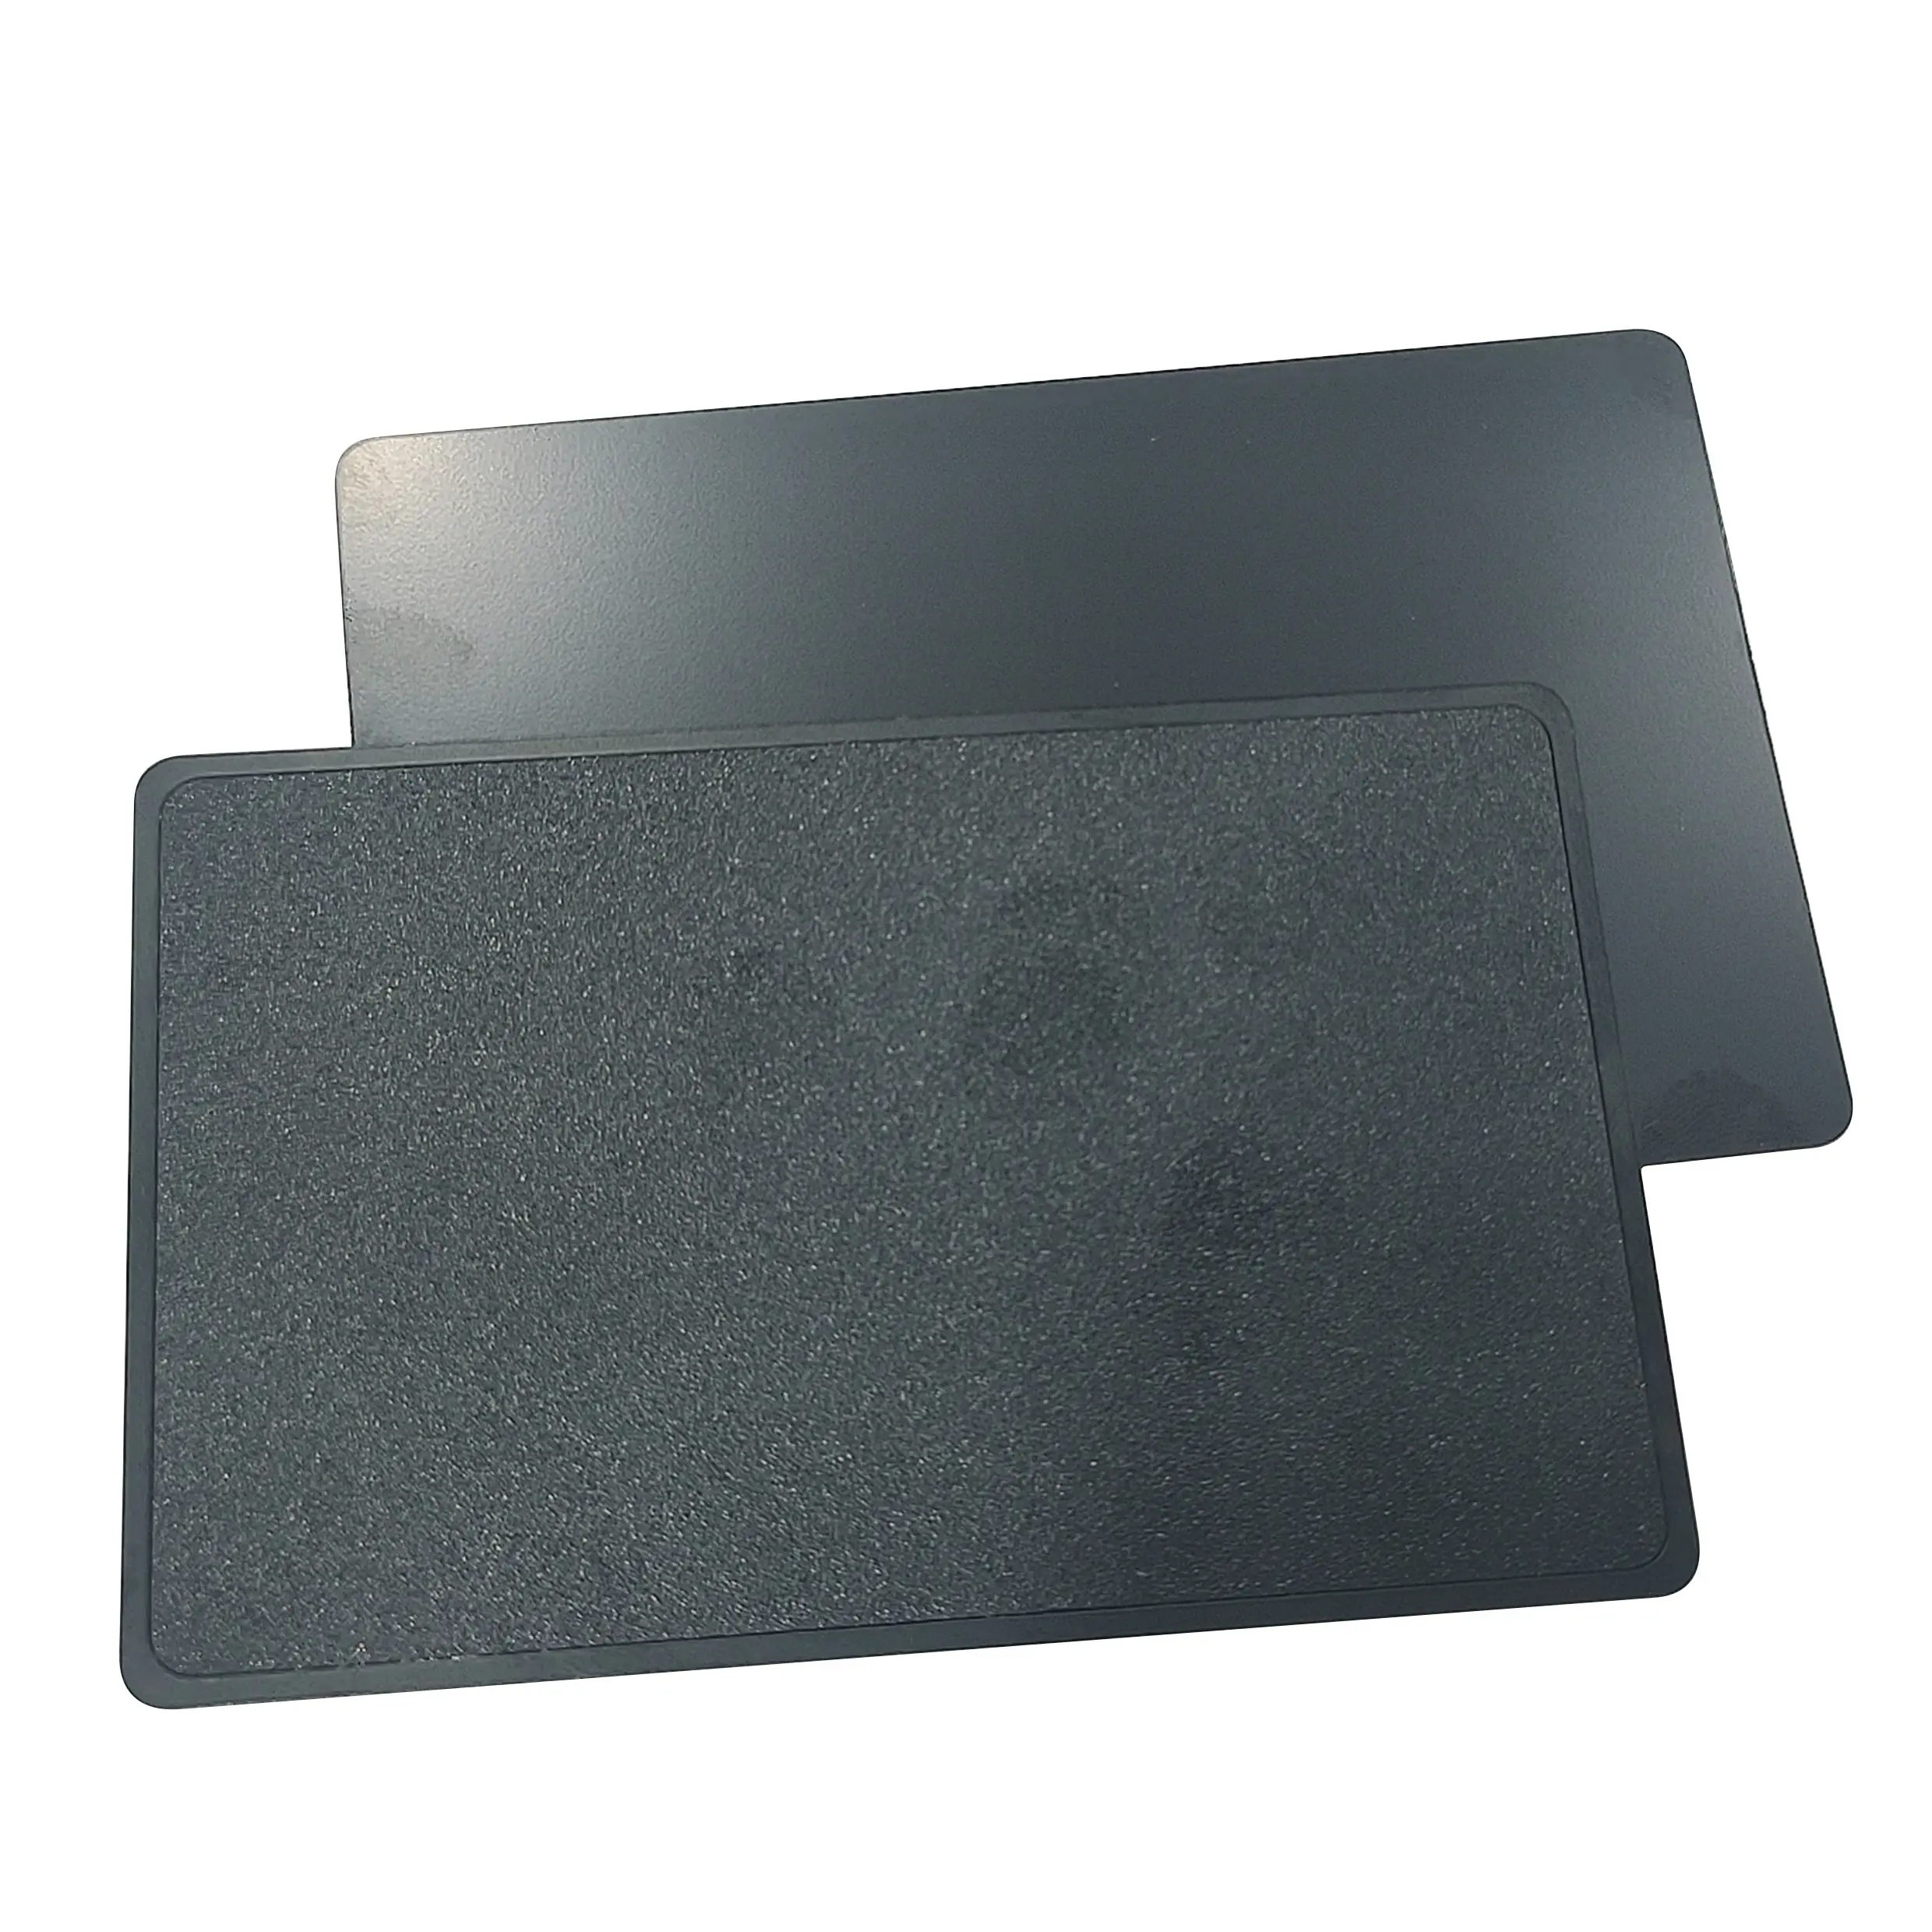 بطاقة أعمال من البولي فينيل كلوريد مطبوعة بالكامل حسب الطلب باللون الأسود غير اللامع وبطاقة أعمال فارغة بتقنية RFID وnfc